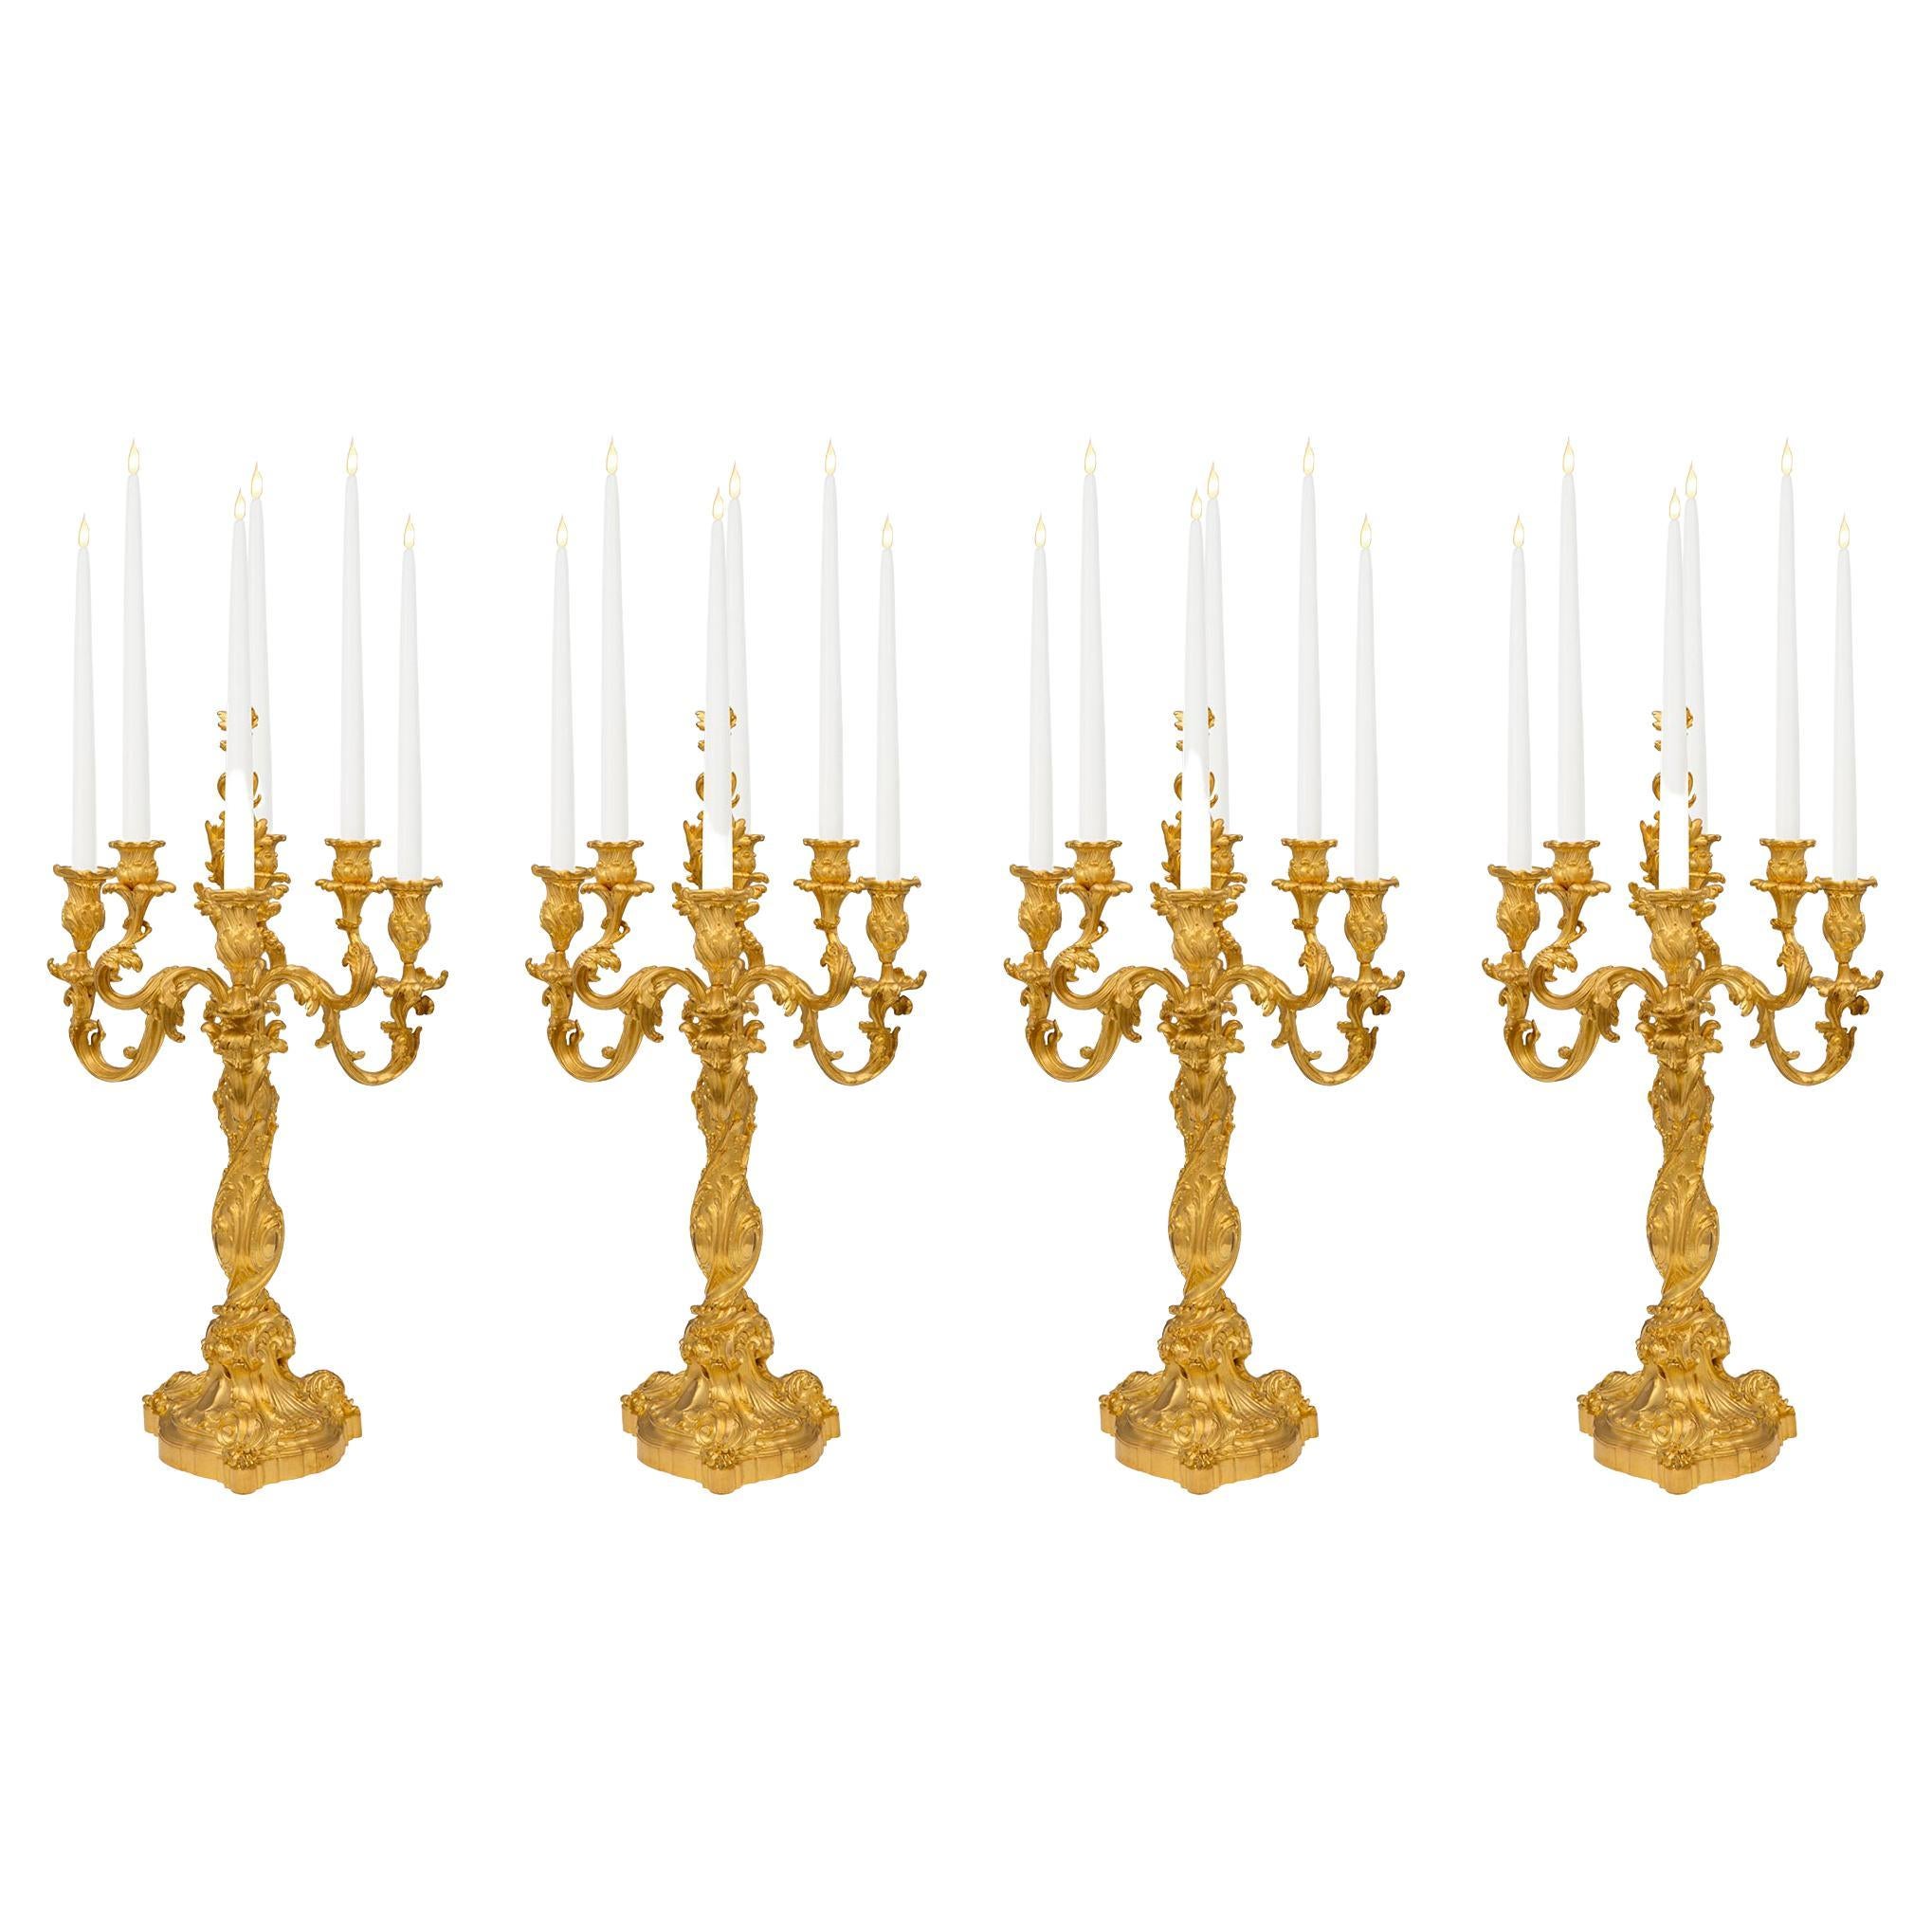 Ensemble de quatre candélabres en bronze doré de style Louis XV du XIXe siècle français